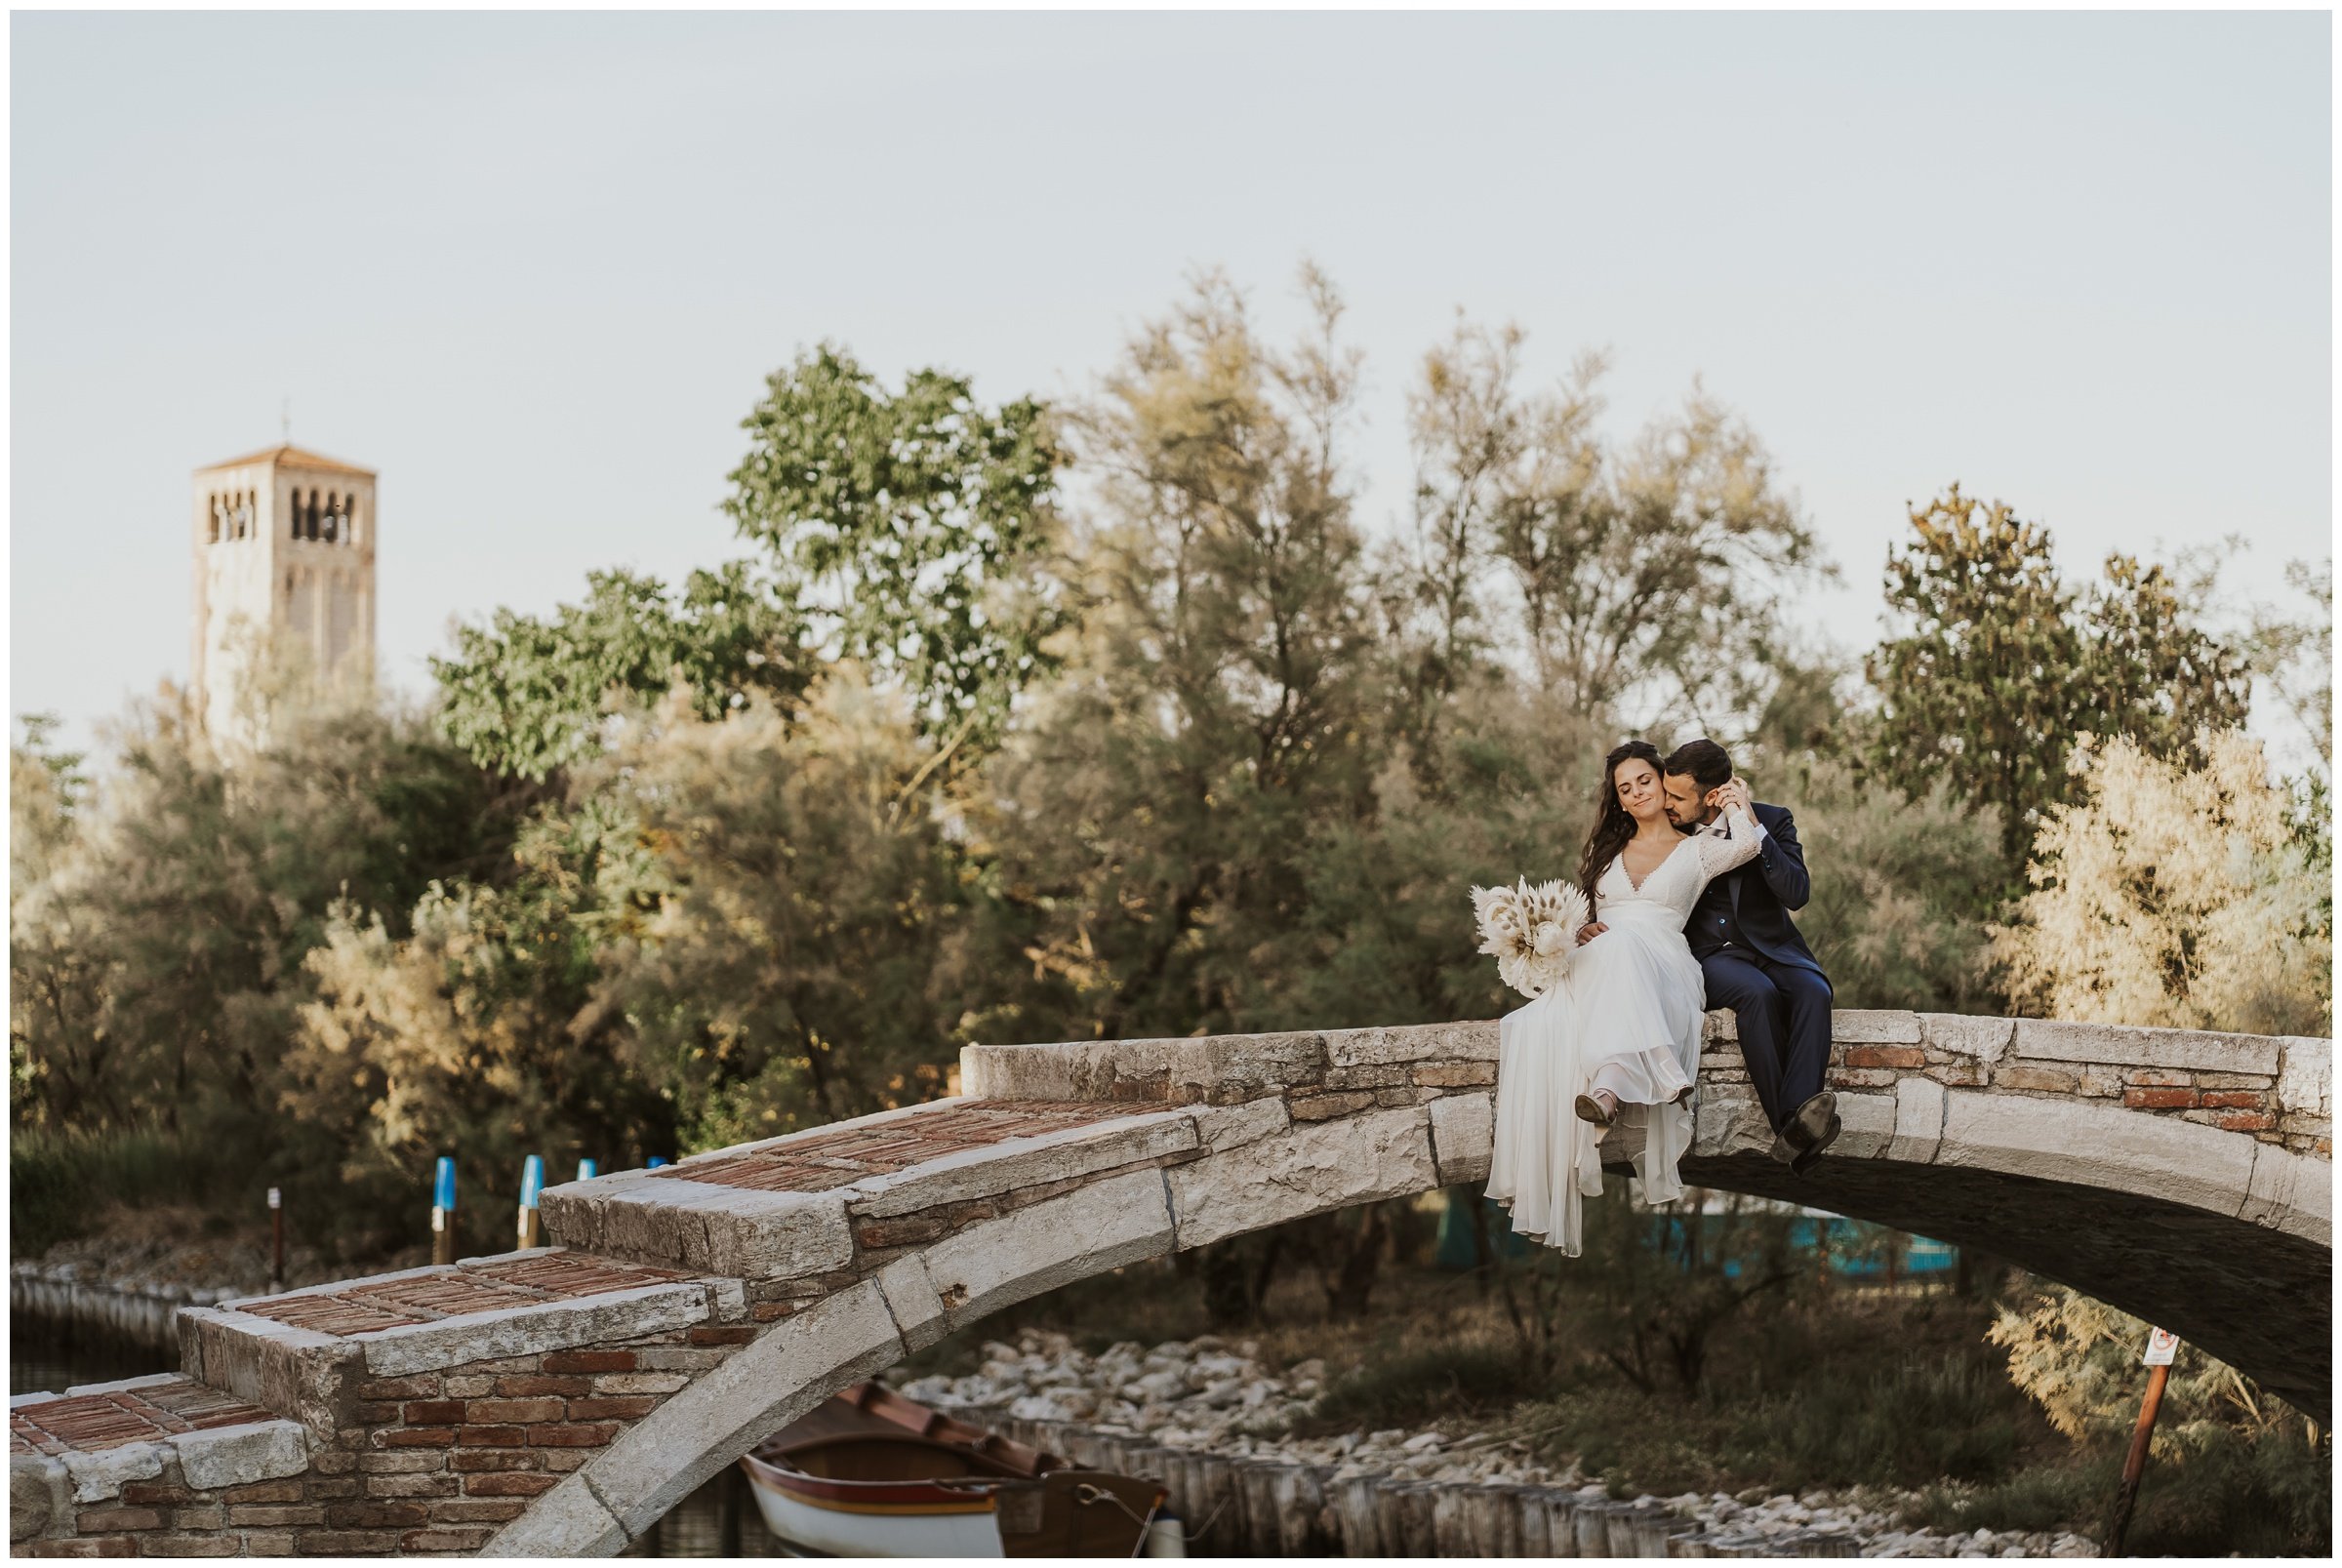 Matrimonio-locanda-cipriani-torcello-fotografo-matrimonio-treviso-fotografo-matrimonio-venezia_0073.jpg